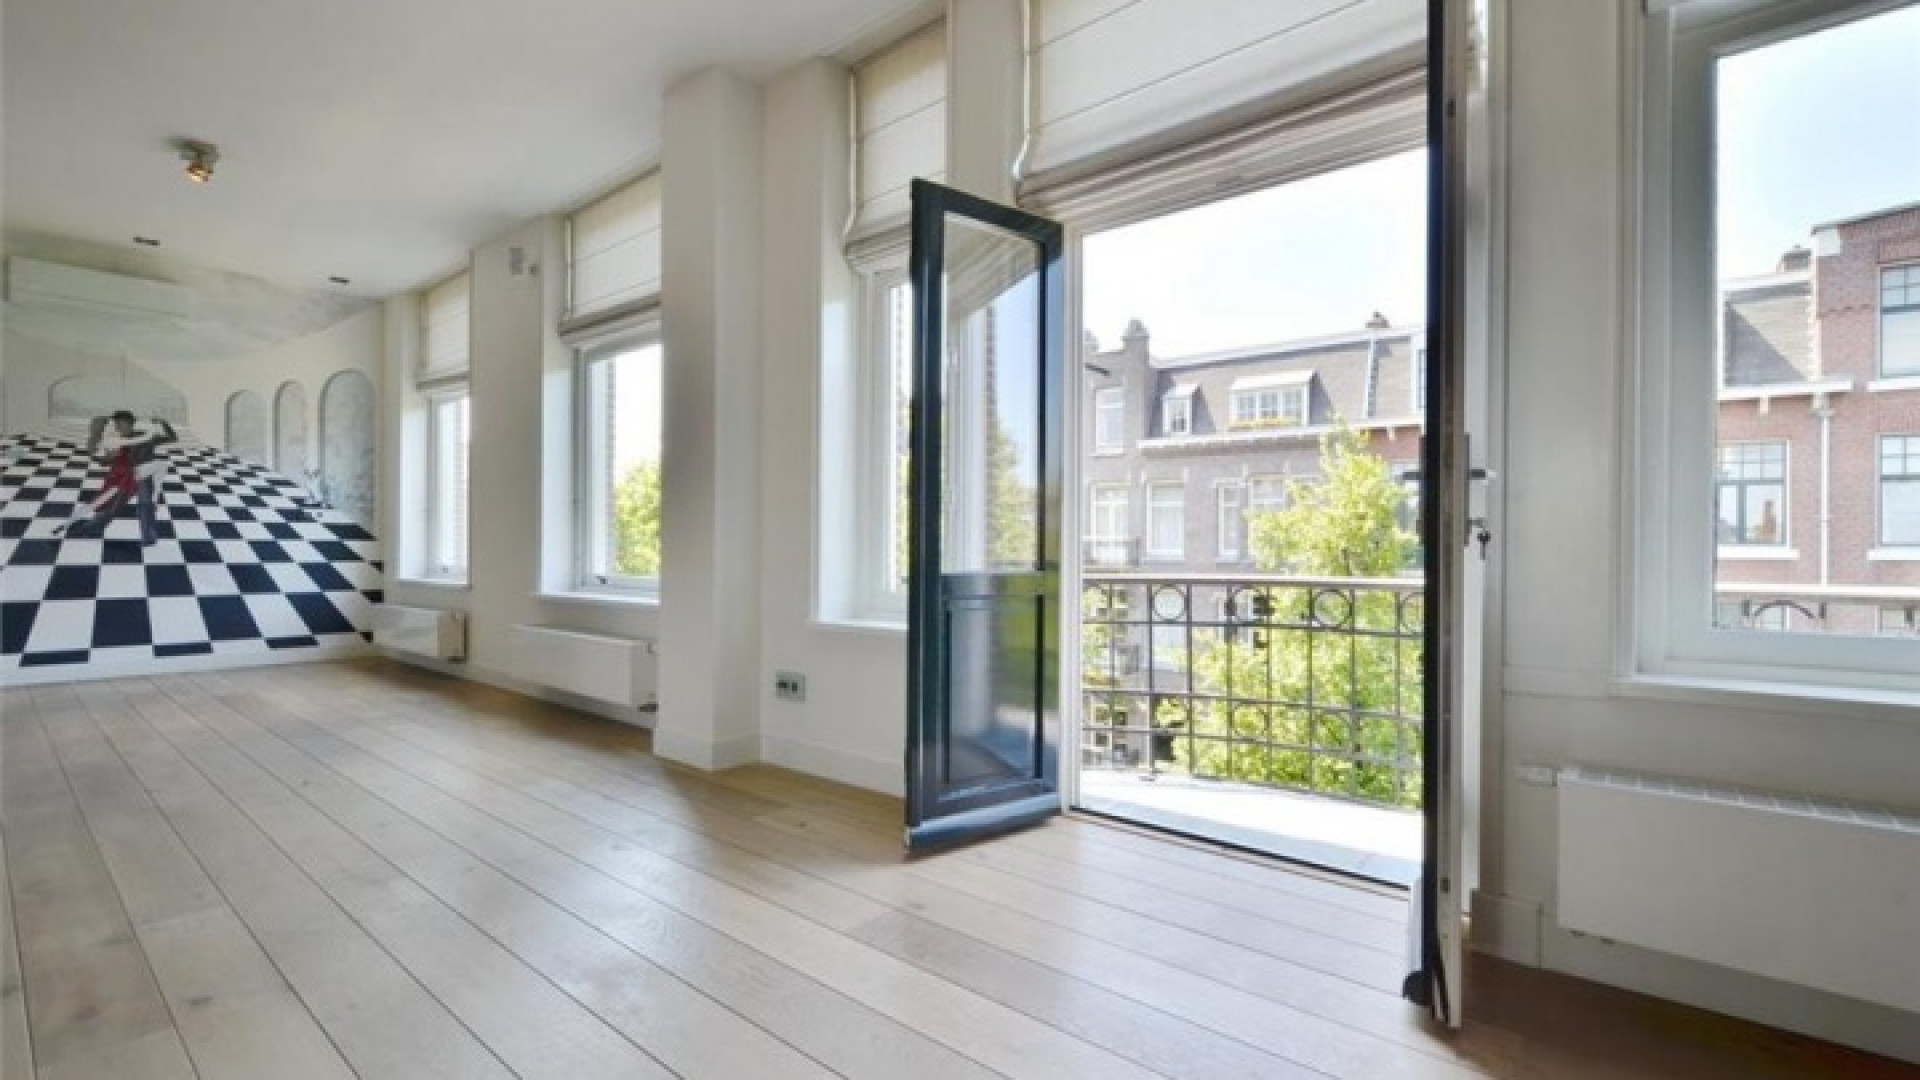 Frank Rijkaard zoekt huurder voor zijn luxe dubbele bovenhuis. Zie foto's 9